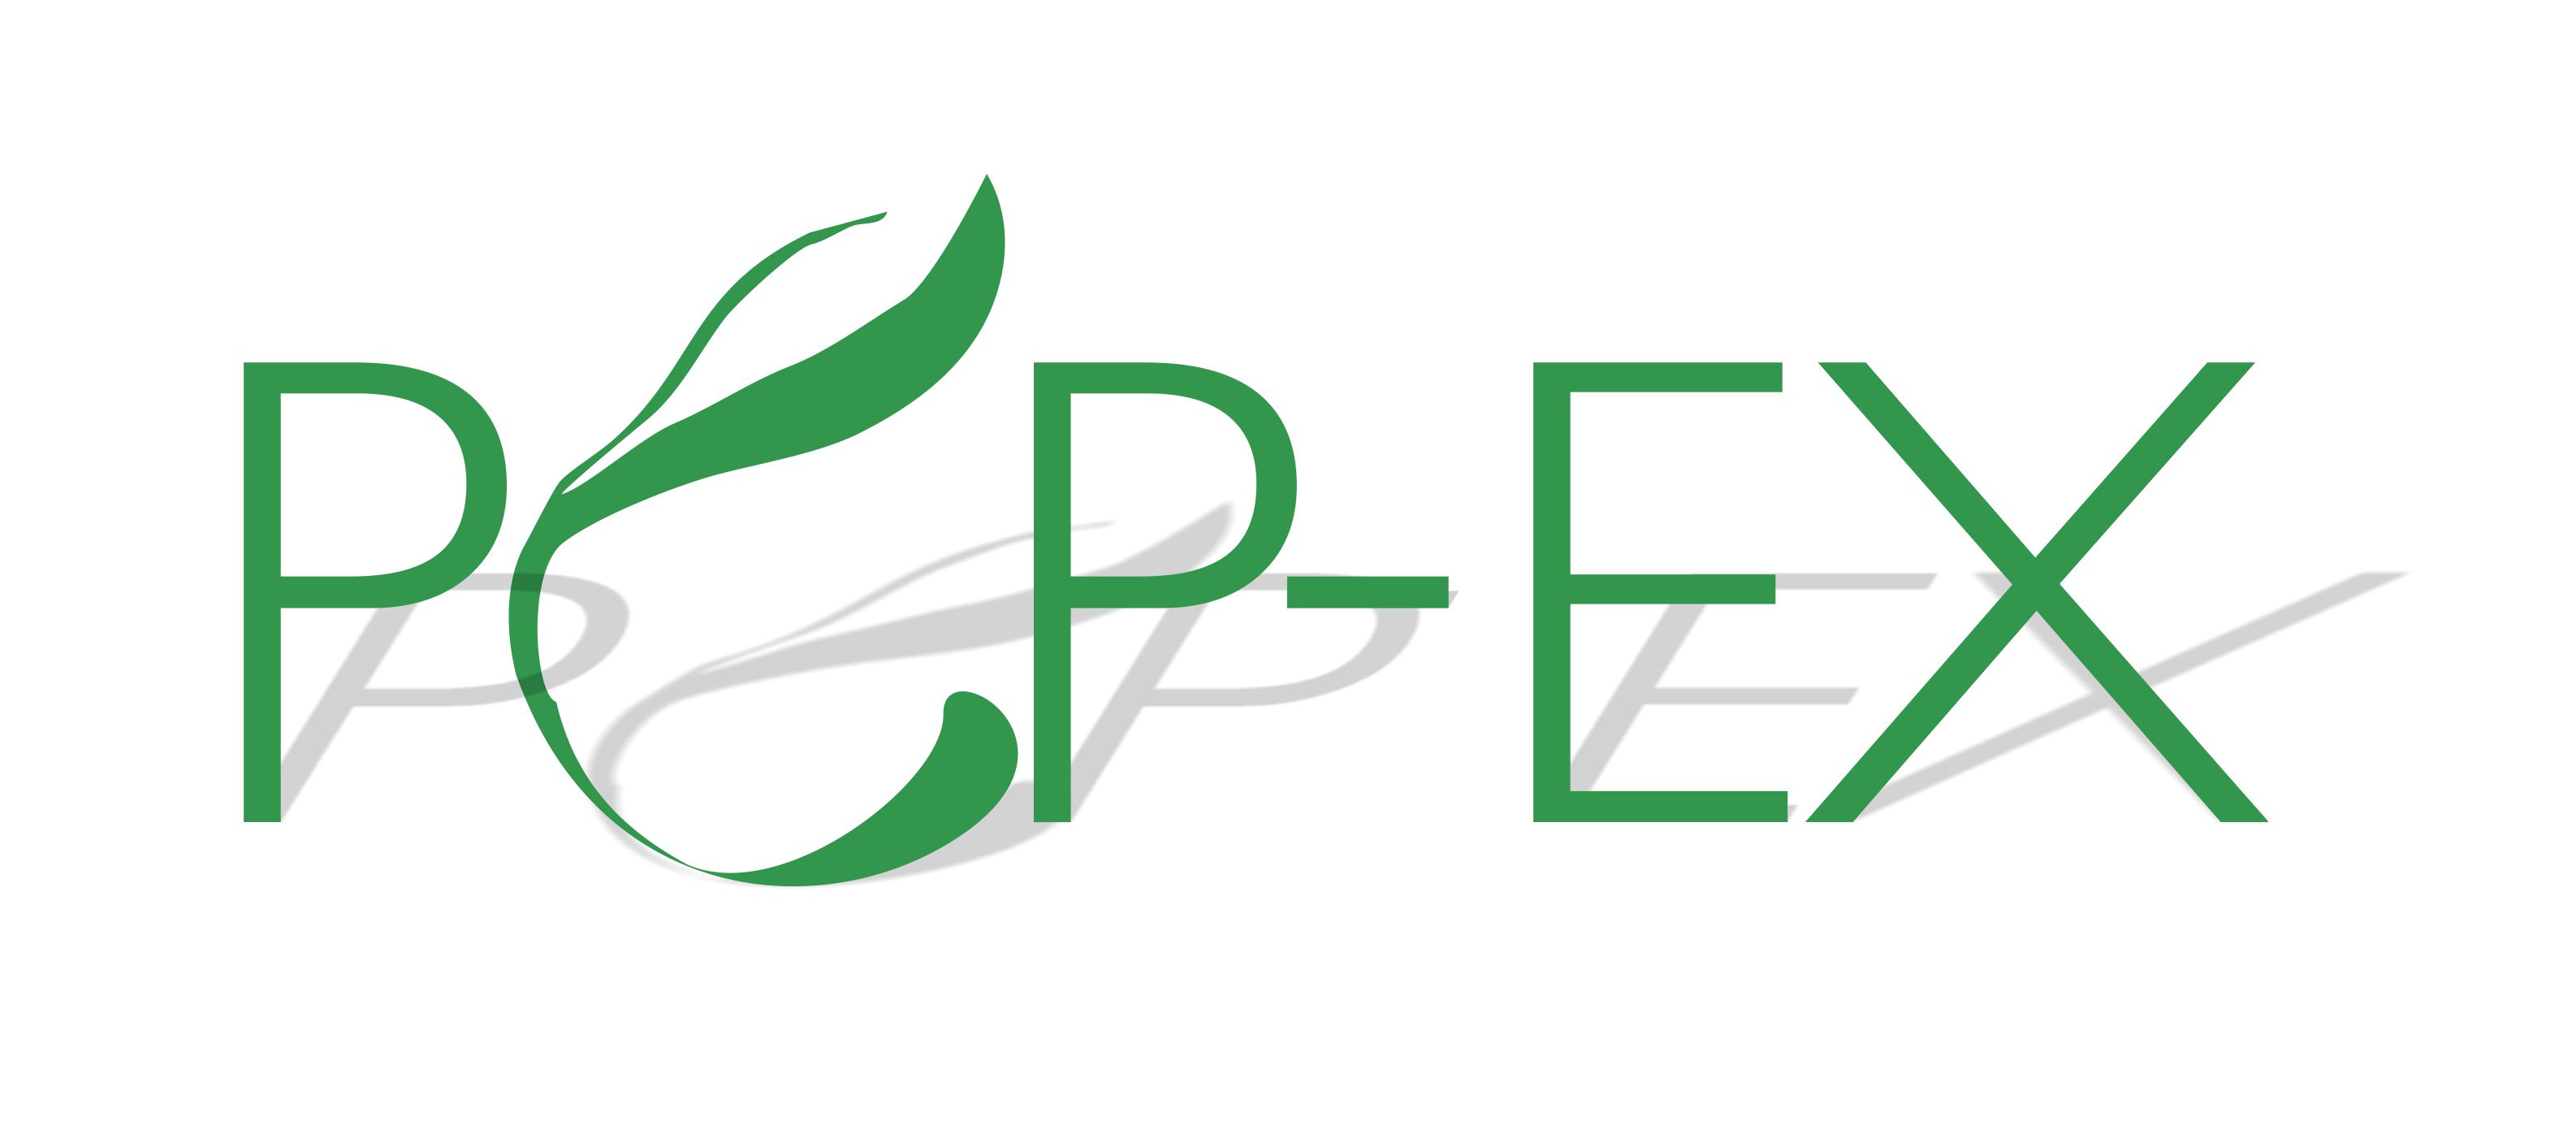 popex logo.jpg